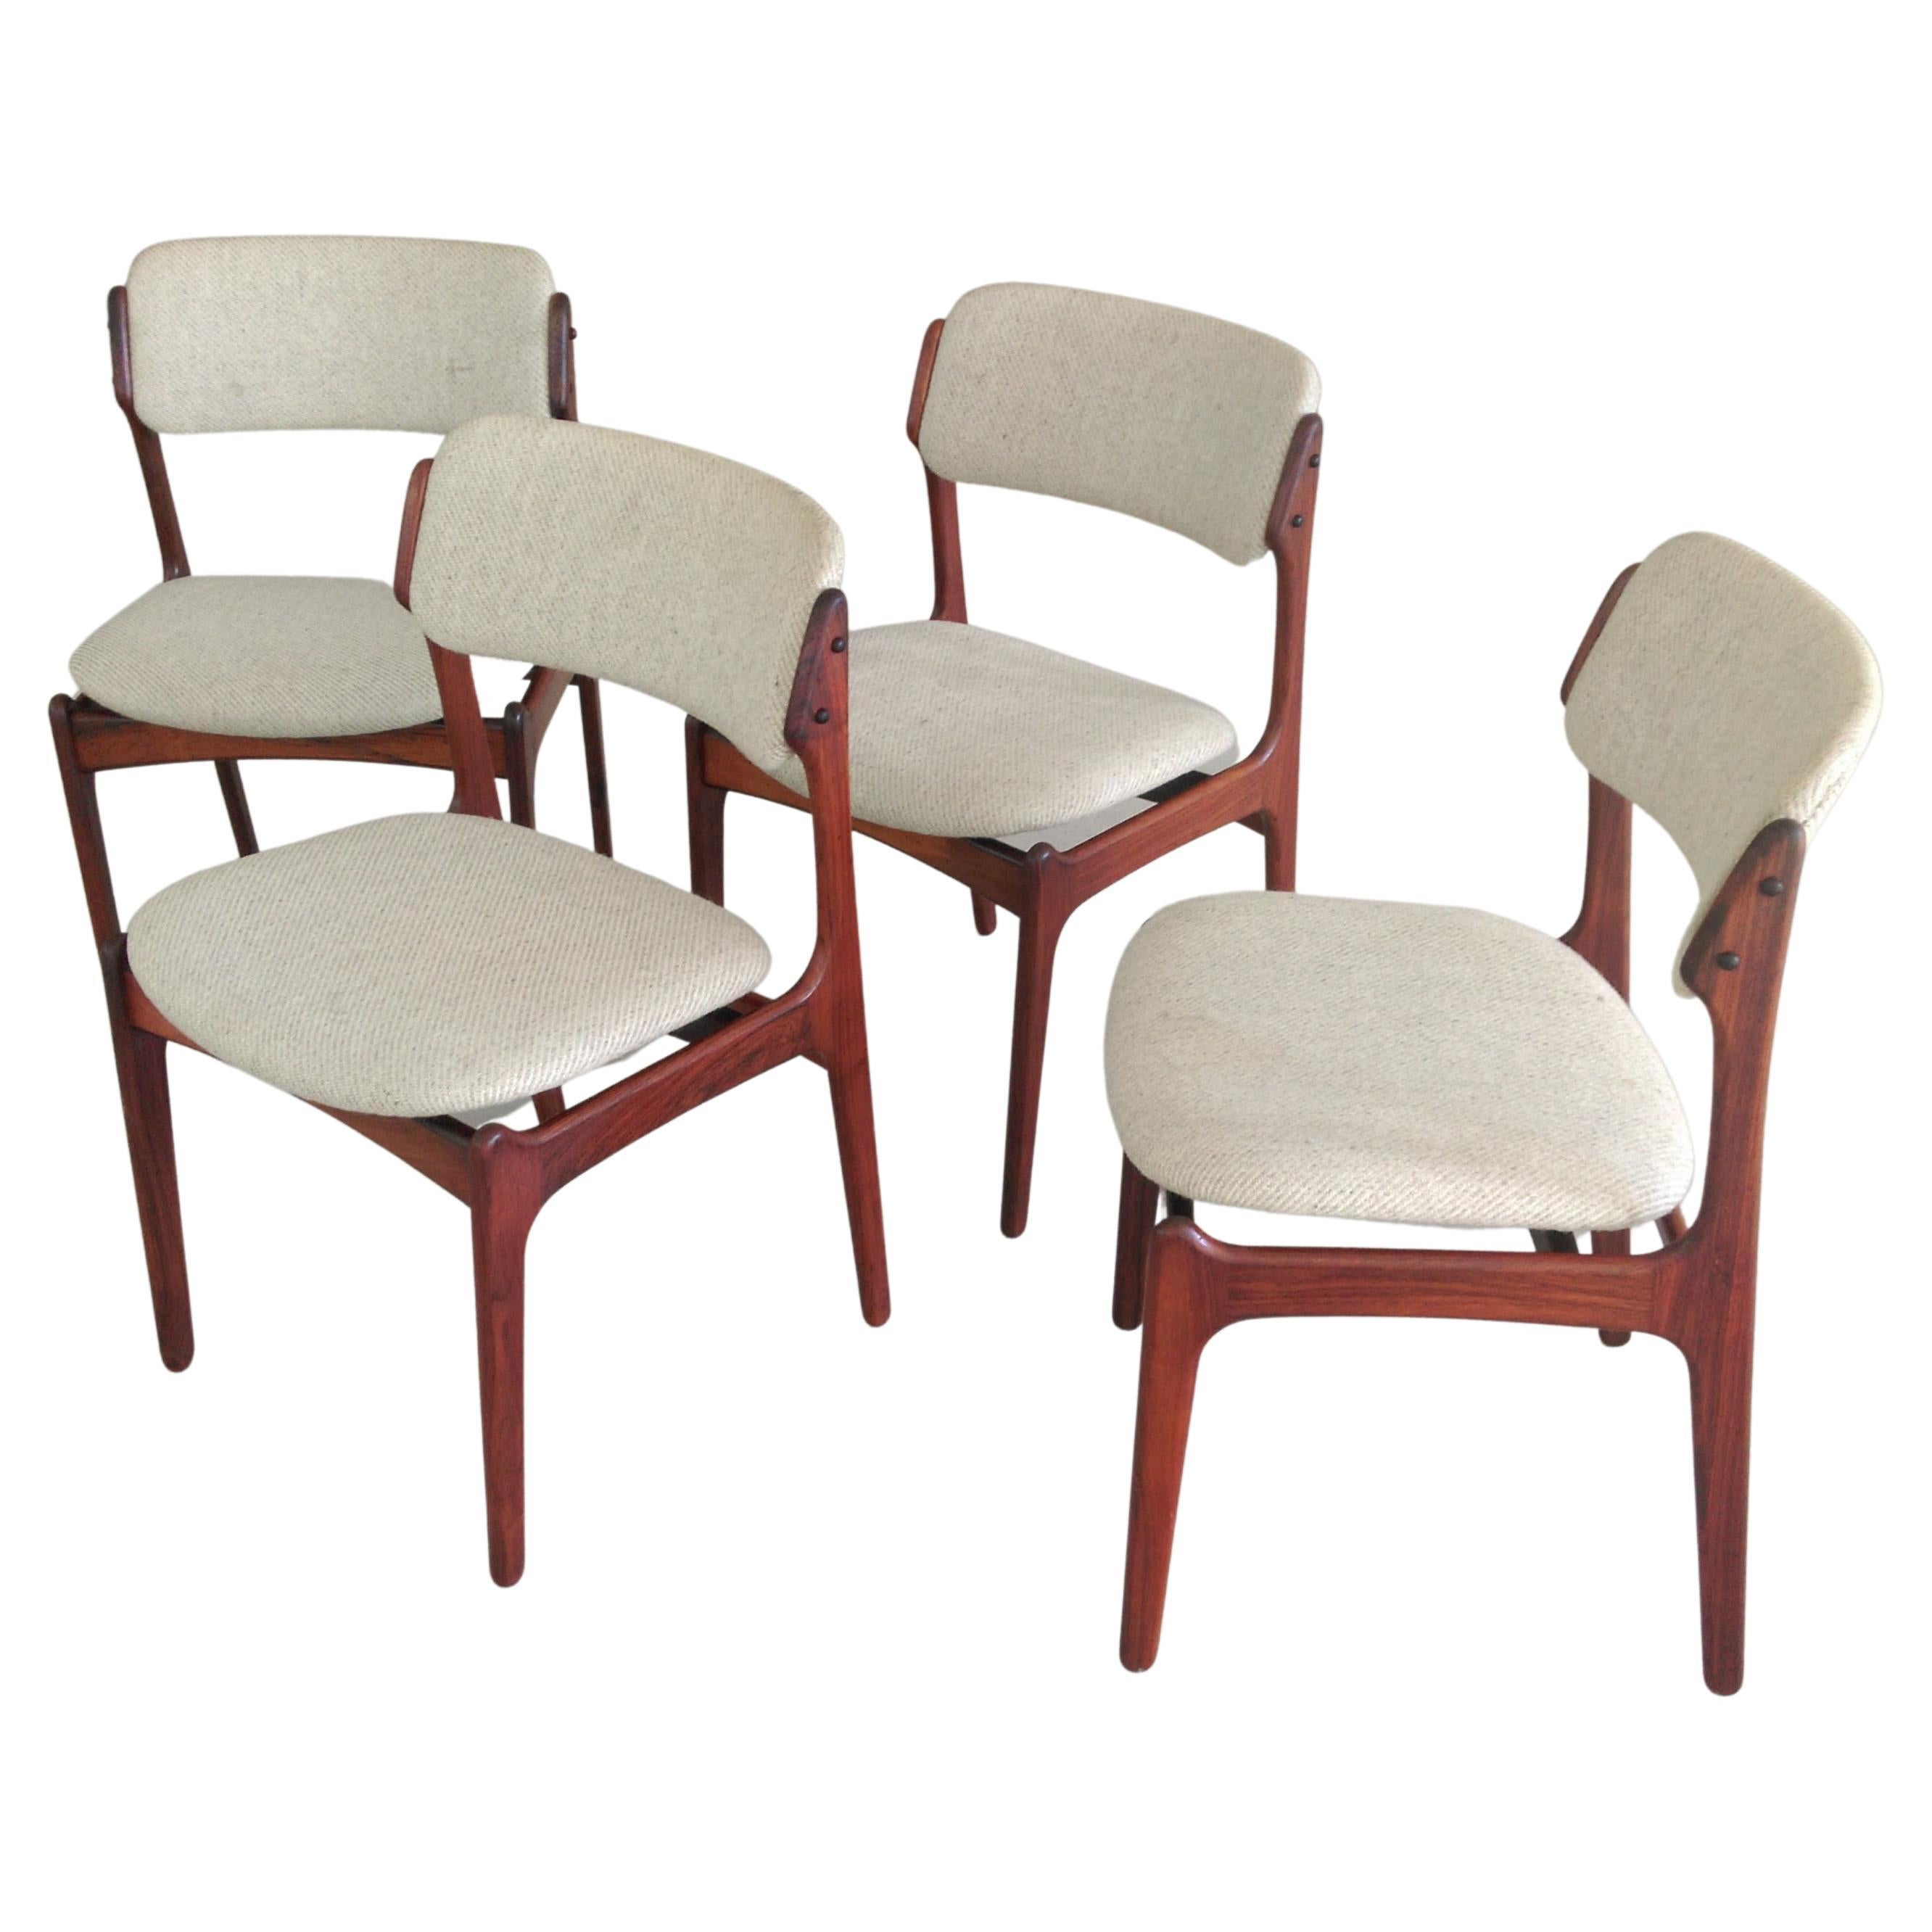 Quatre chaises de salle à manger Erik Buch restaurées en palissandre, retapissées sur mesure incluses en vente